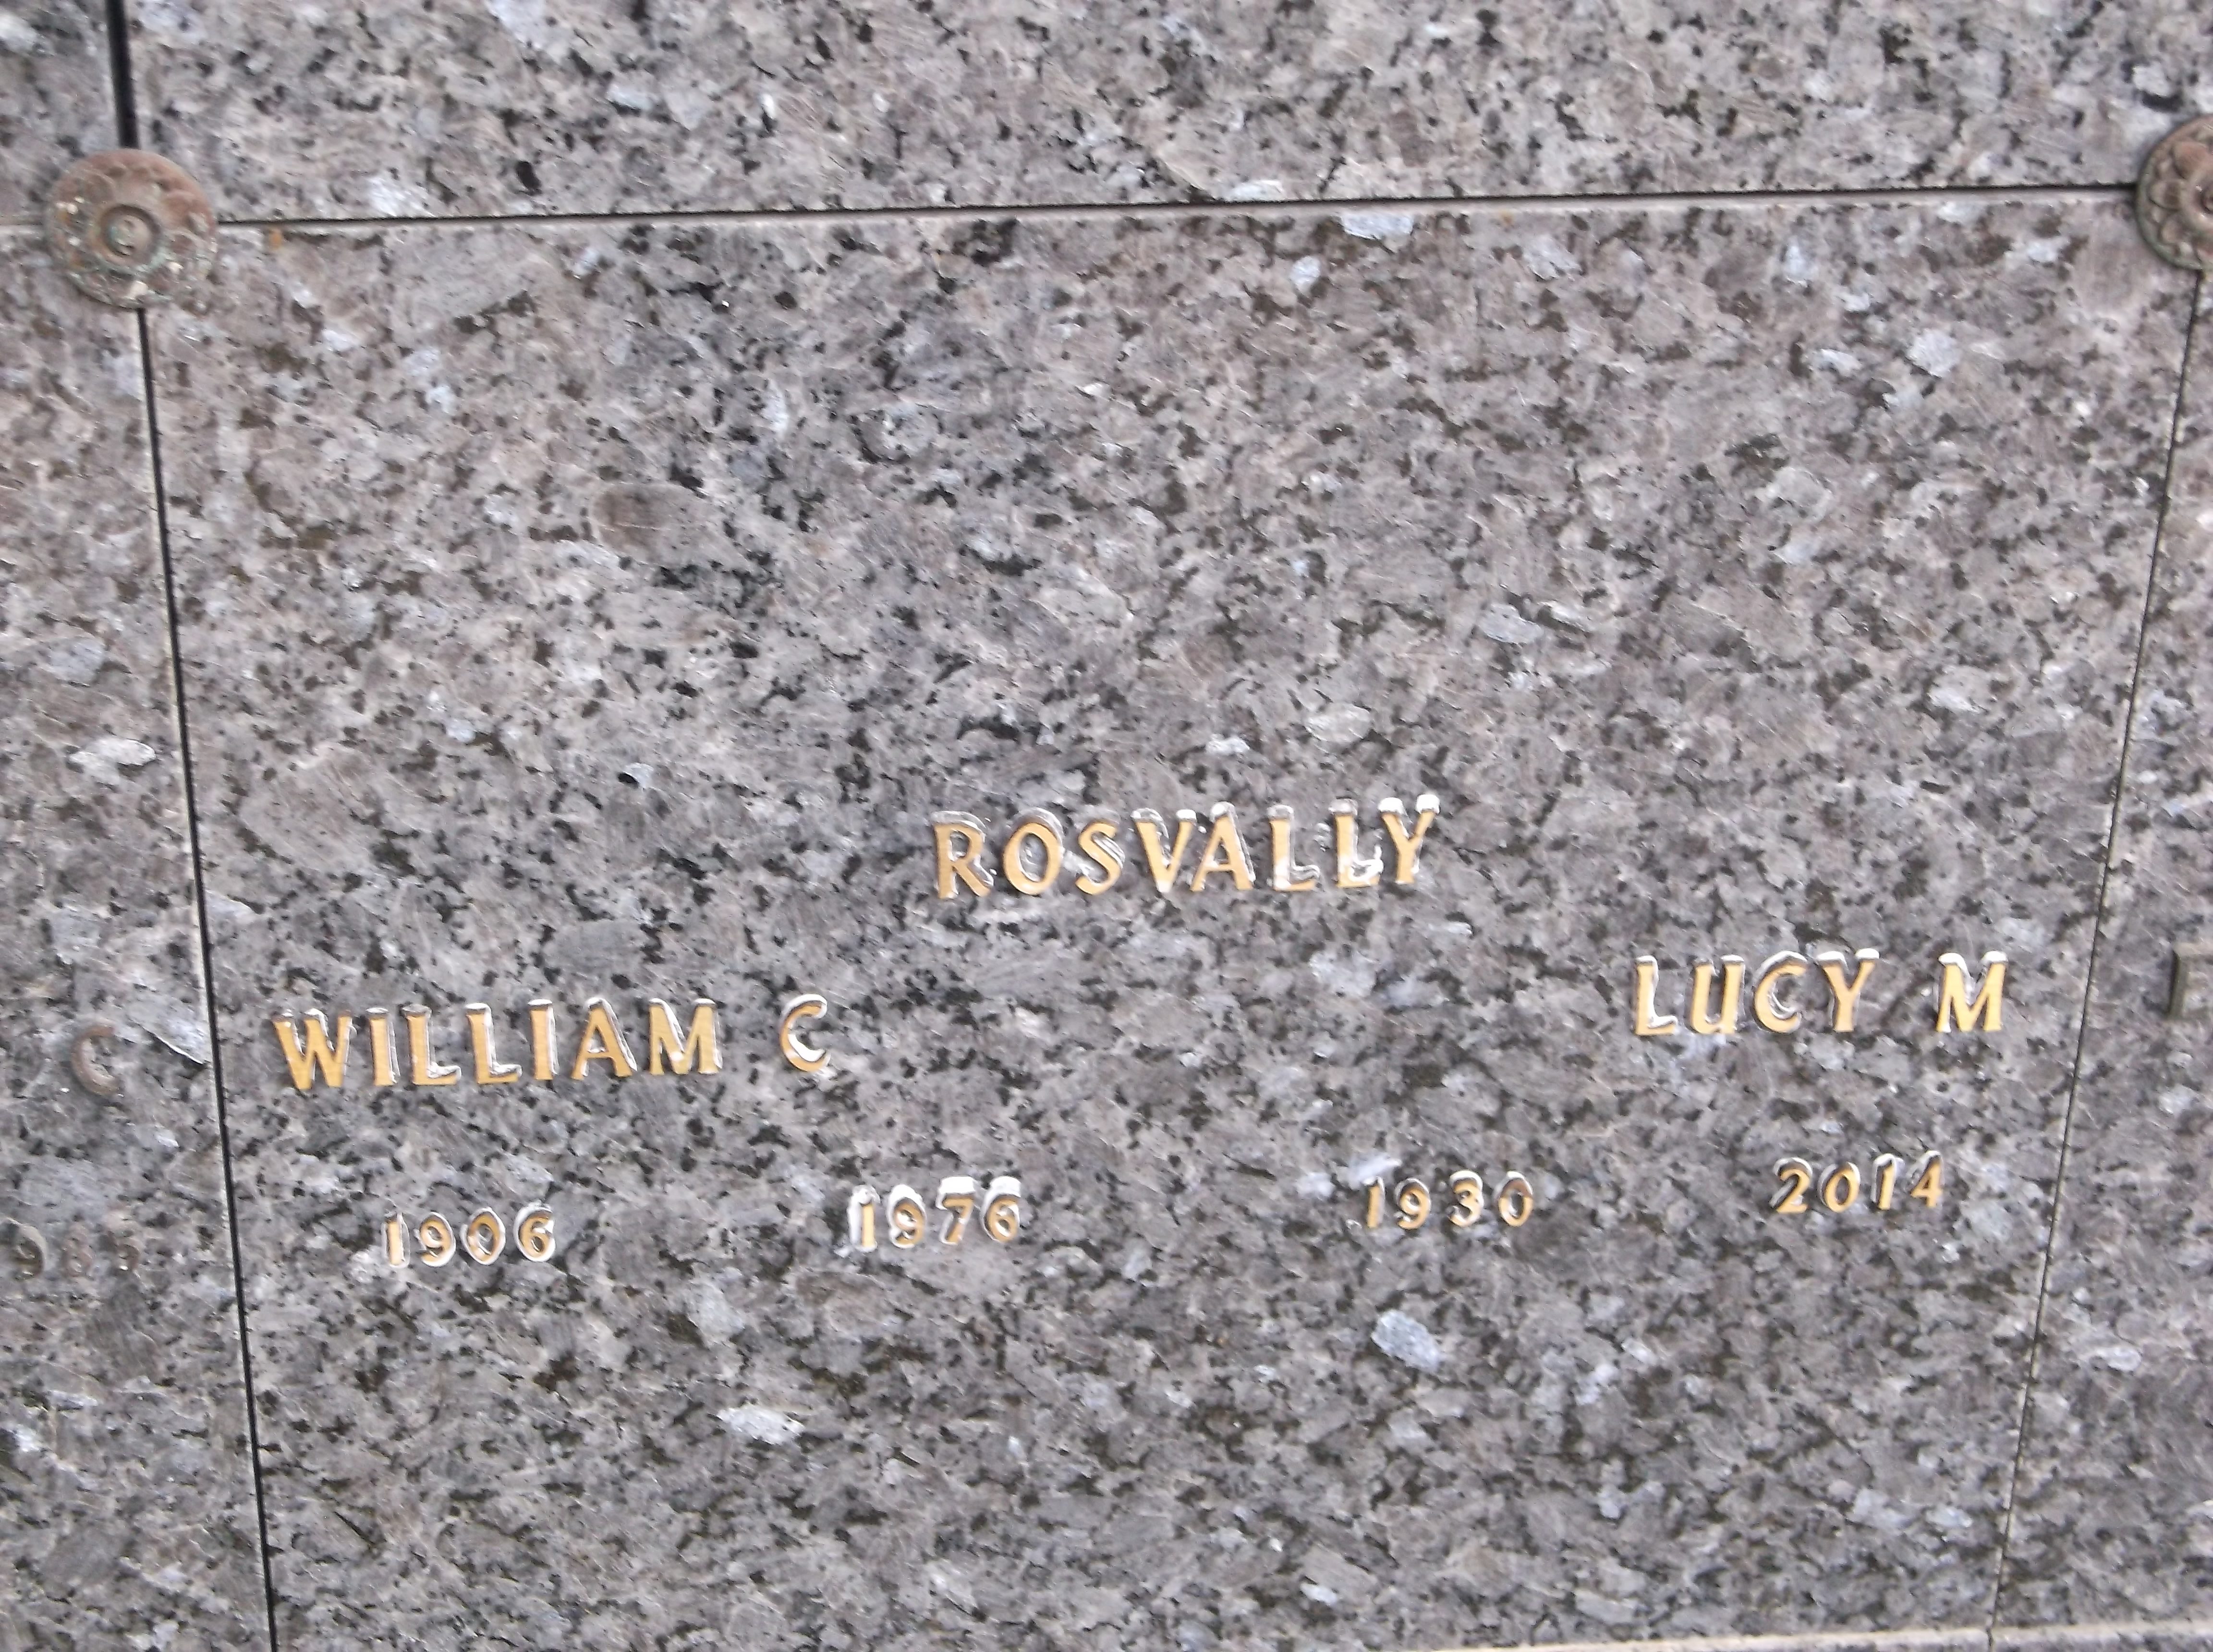 William C Rosvally